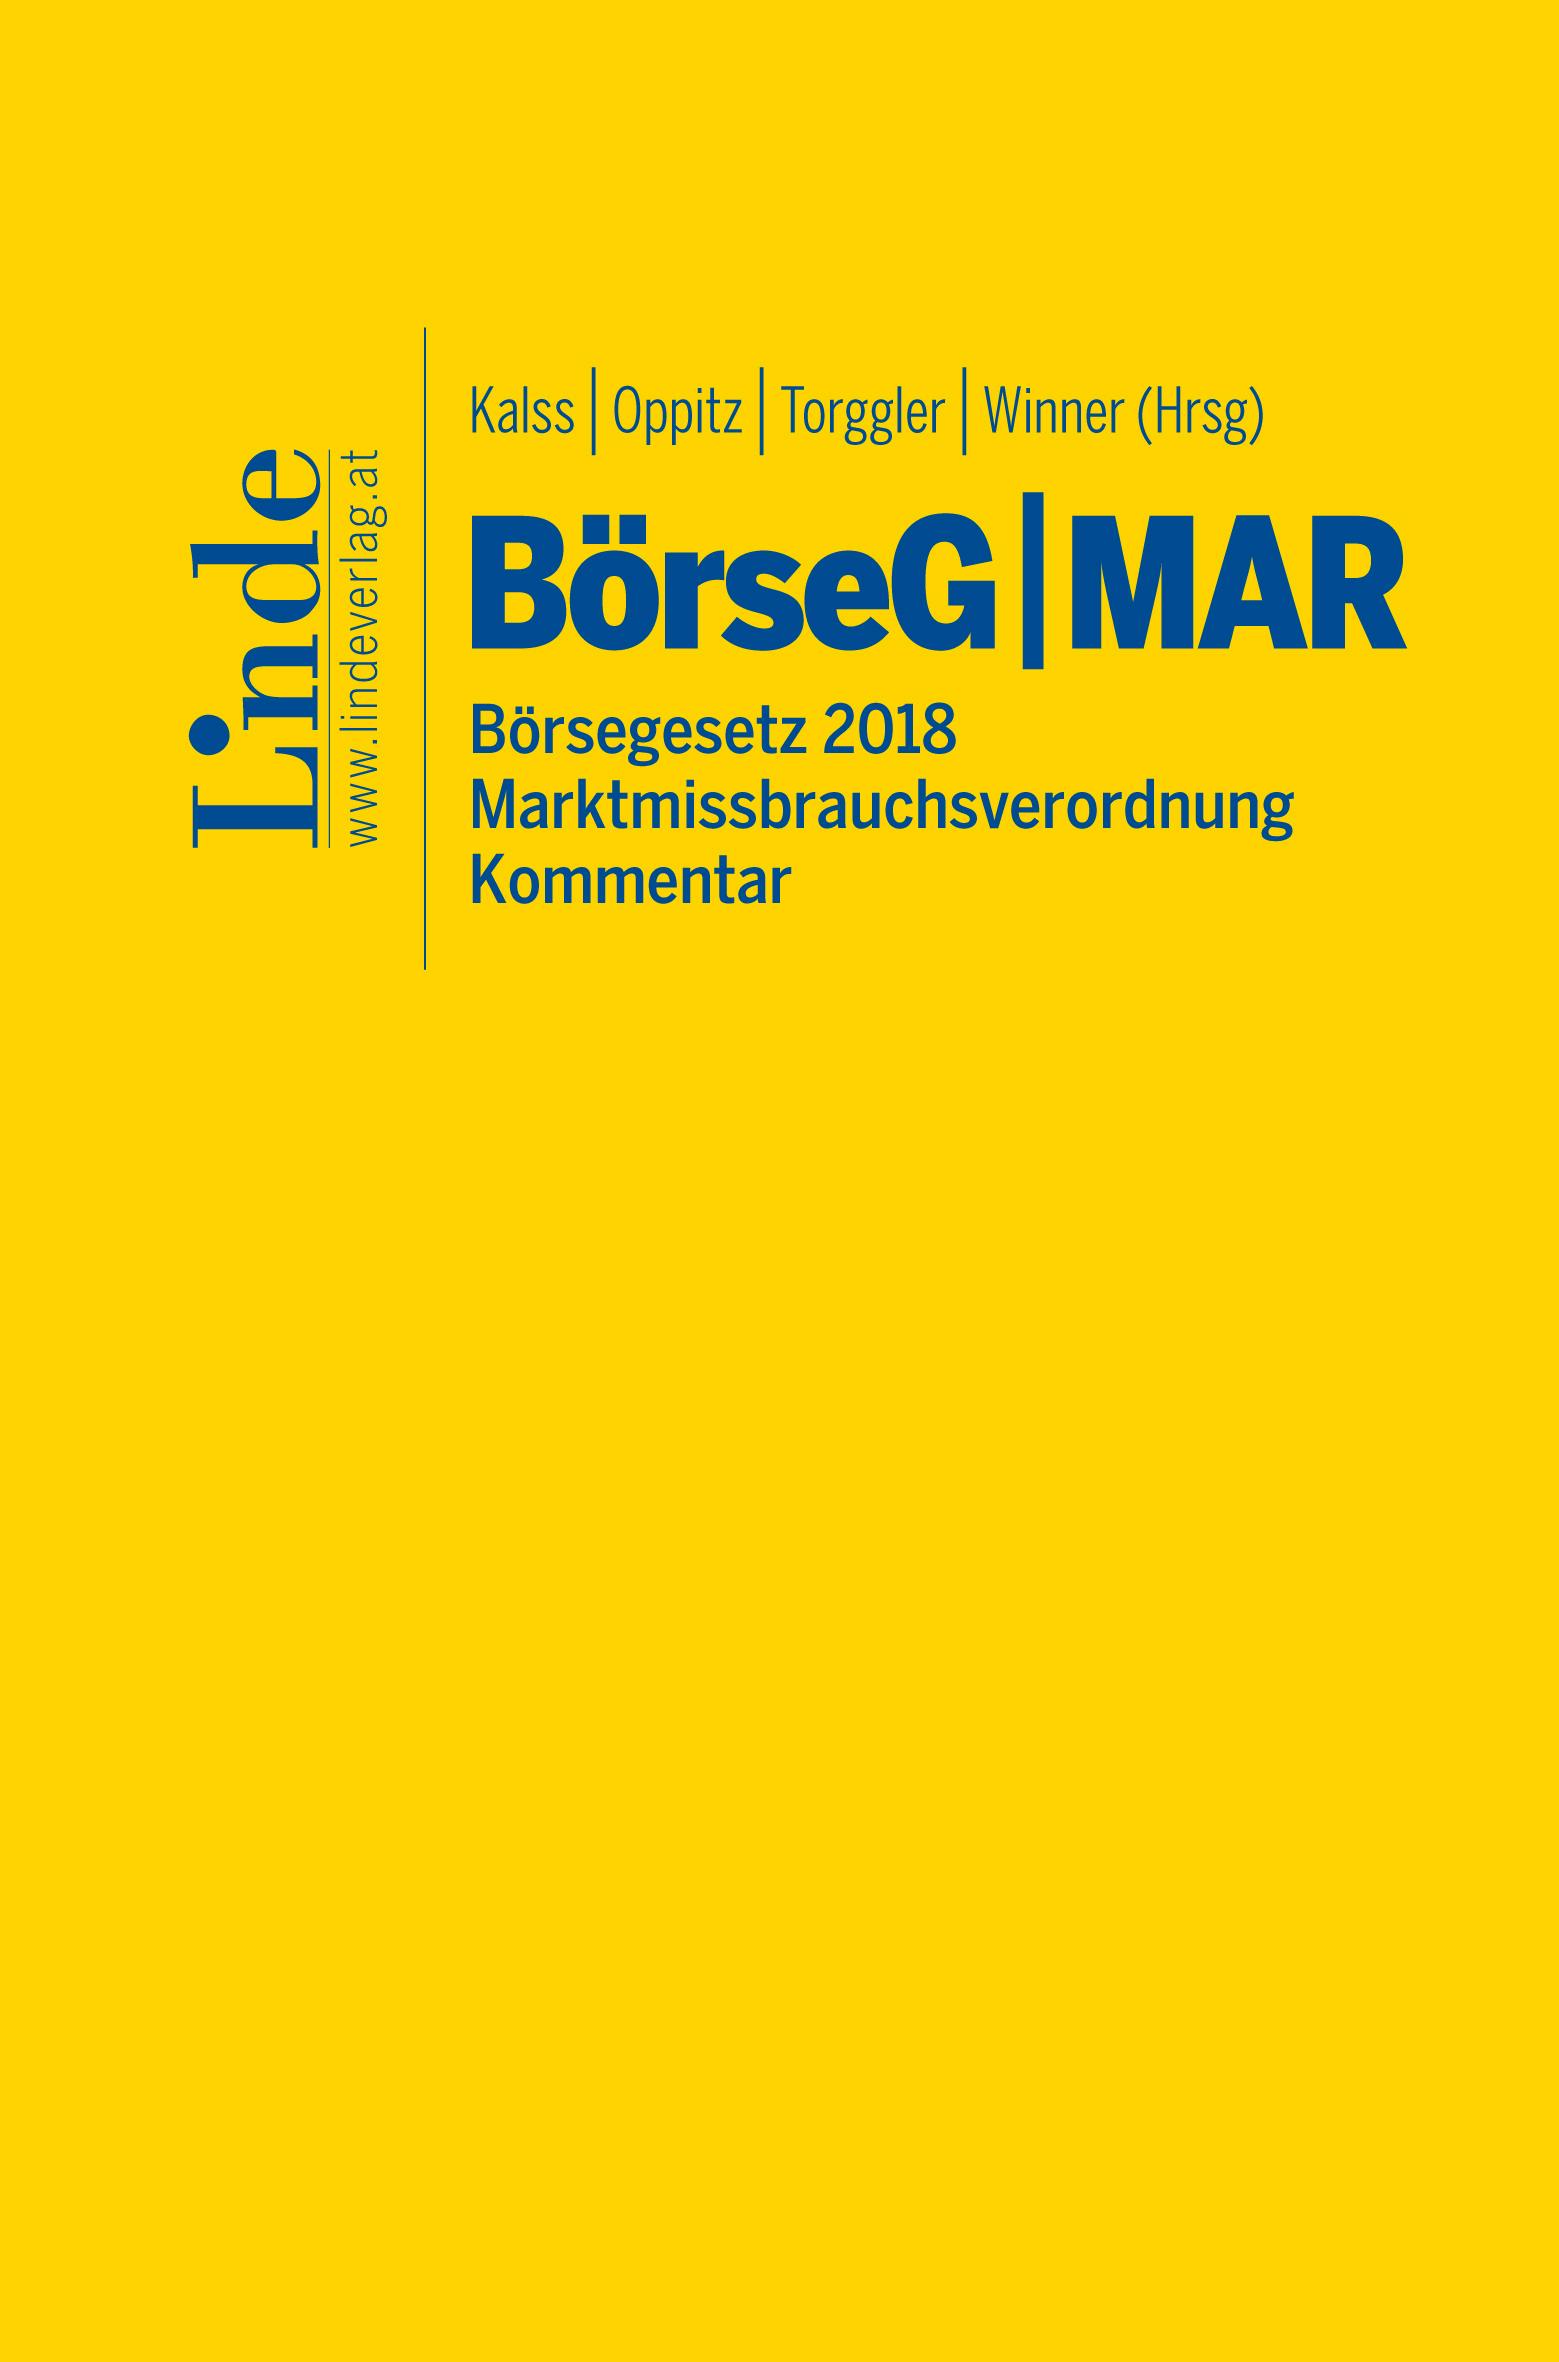 Kalss | Oppitz | Torggler | Winner (Hrsg.)
BörseG Börsegesetz 2018 | MAR Marktmissbrauchsverordnung